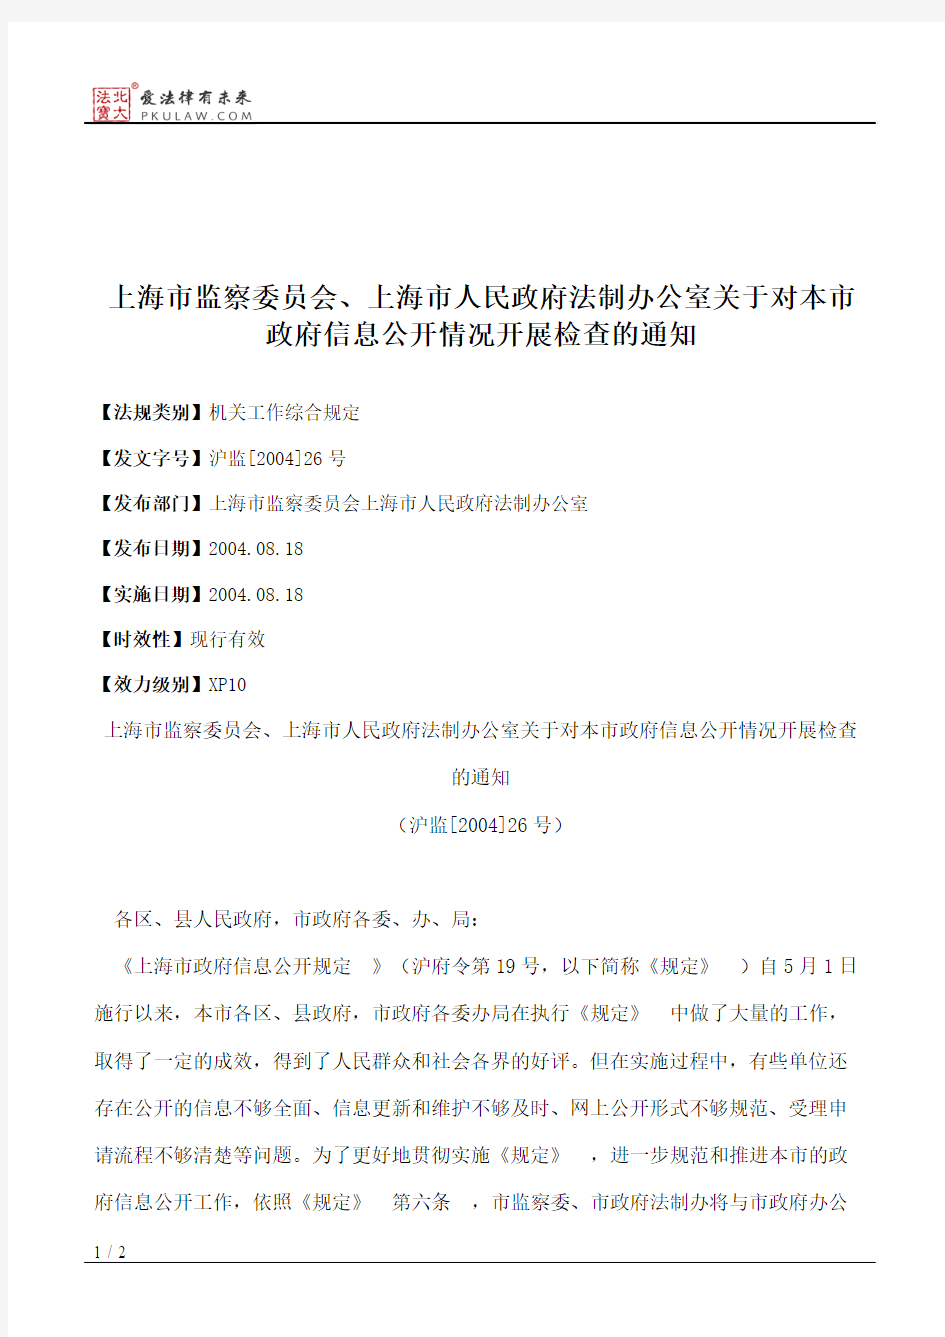 上海市监察委员会、上海市人民政府法制办公室关于对本市政府信息